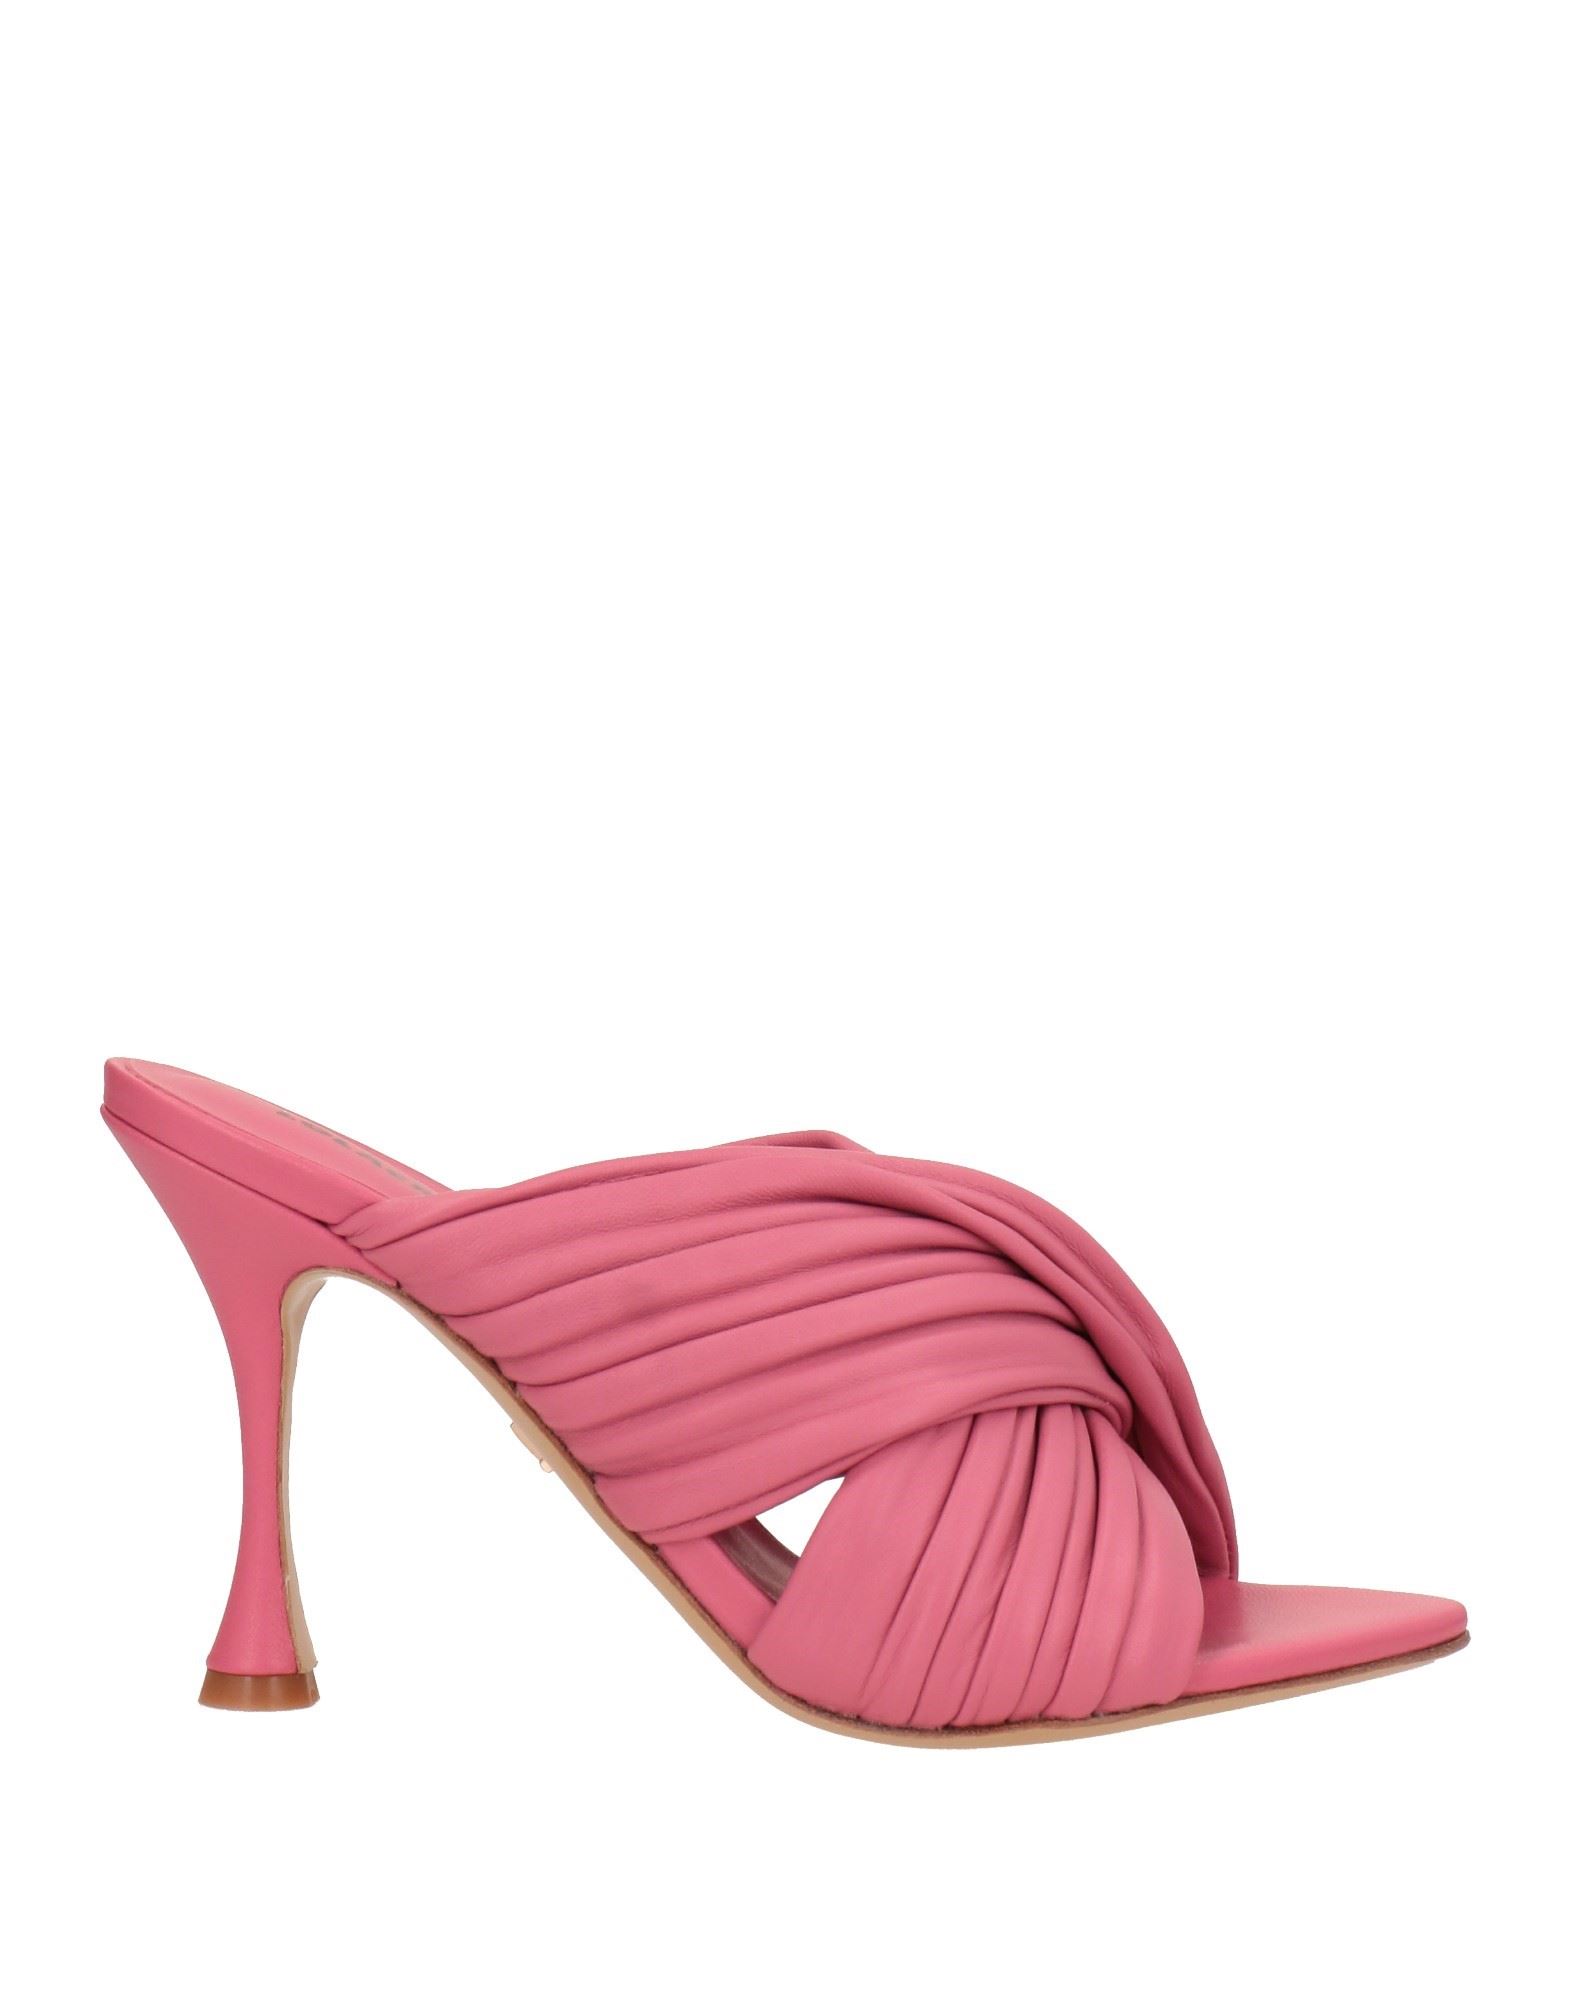 Shop Lola Cruz Woman Sandals Pastel Pink Size 7 Soft Leather